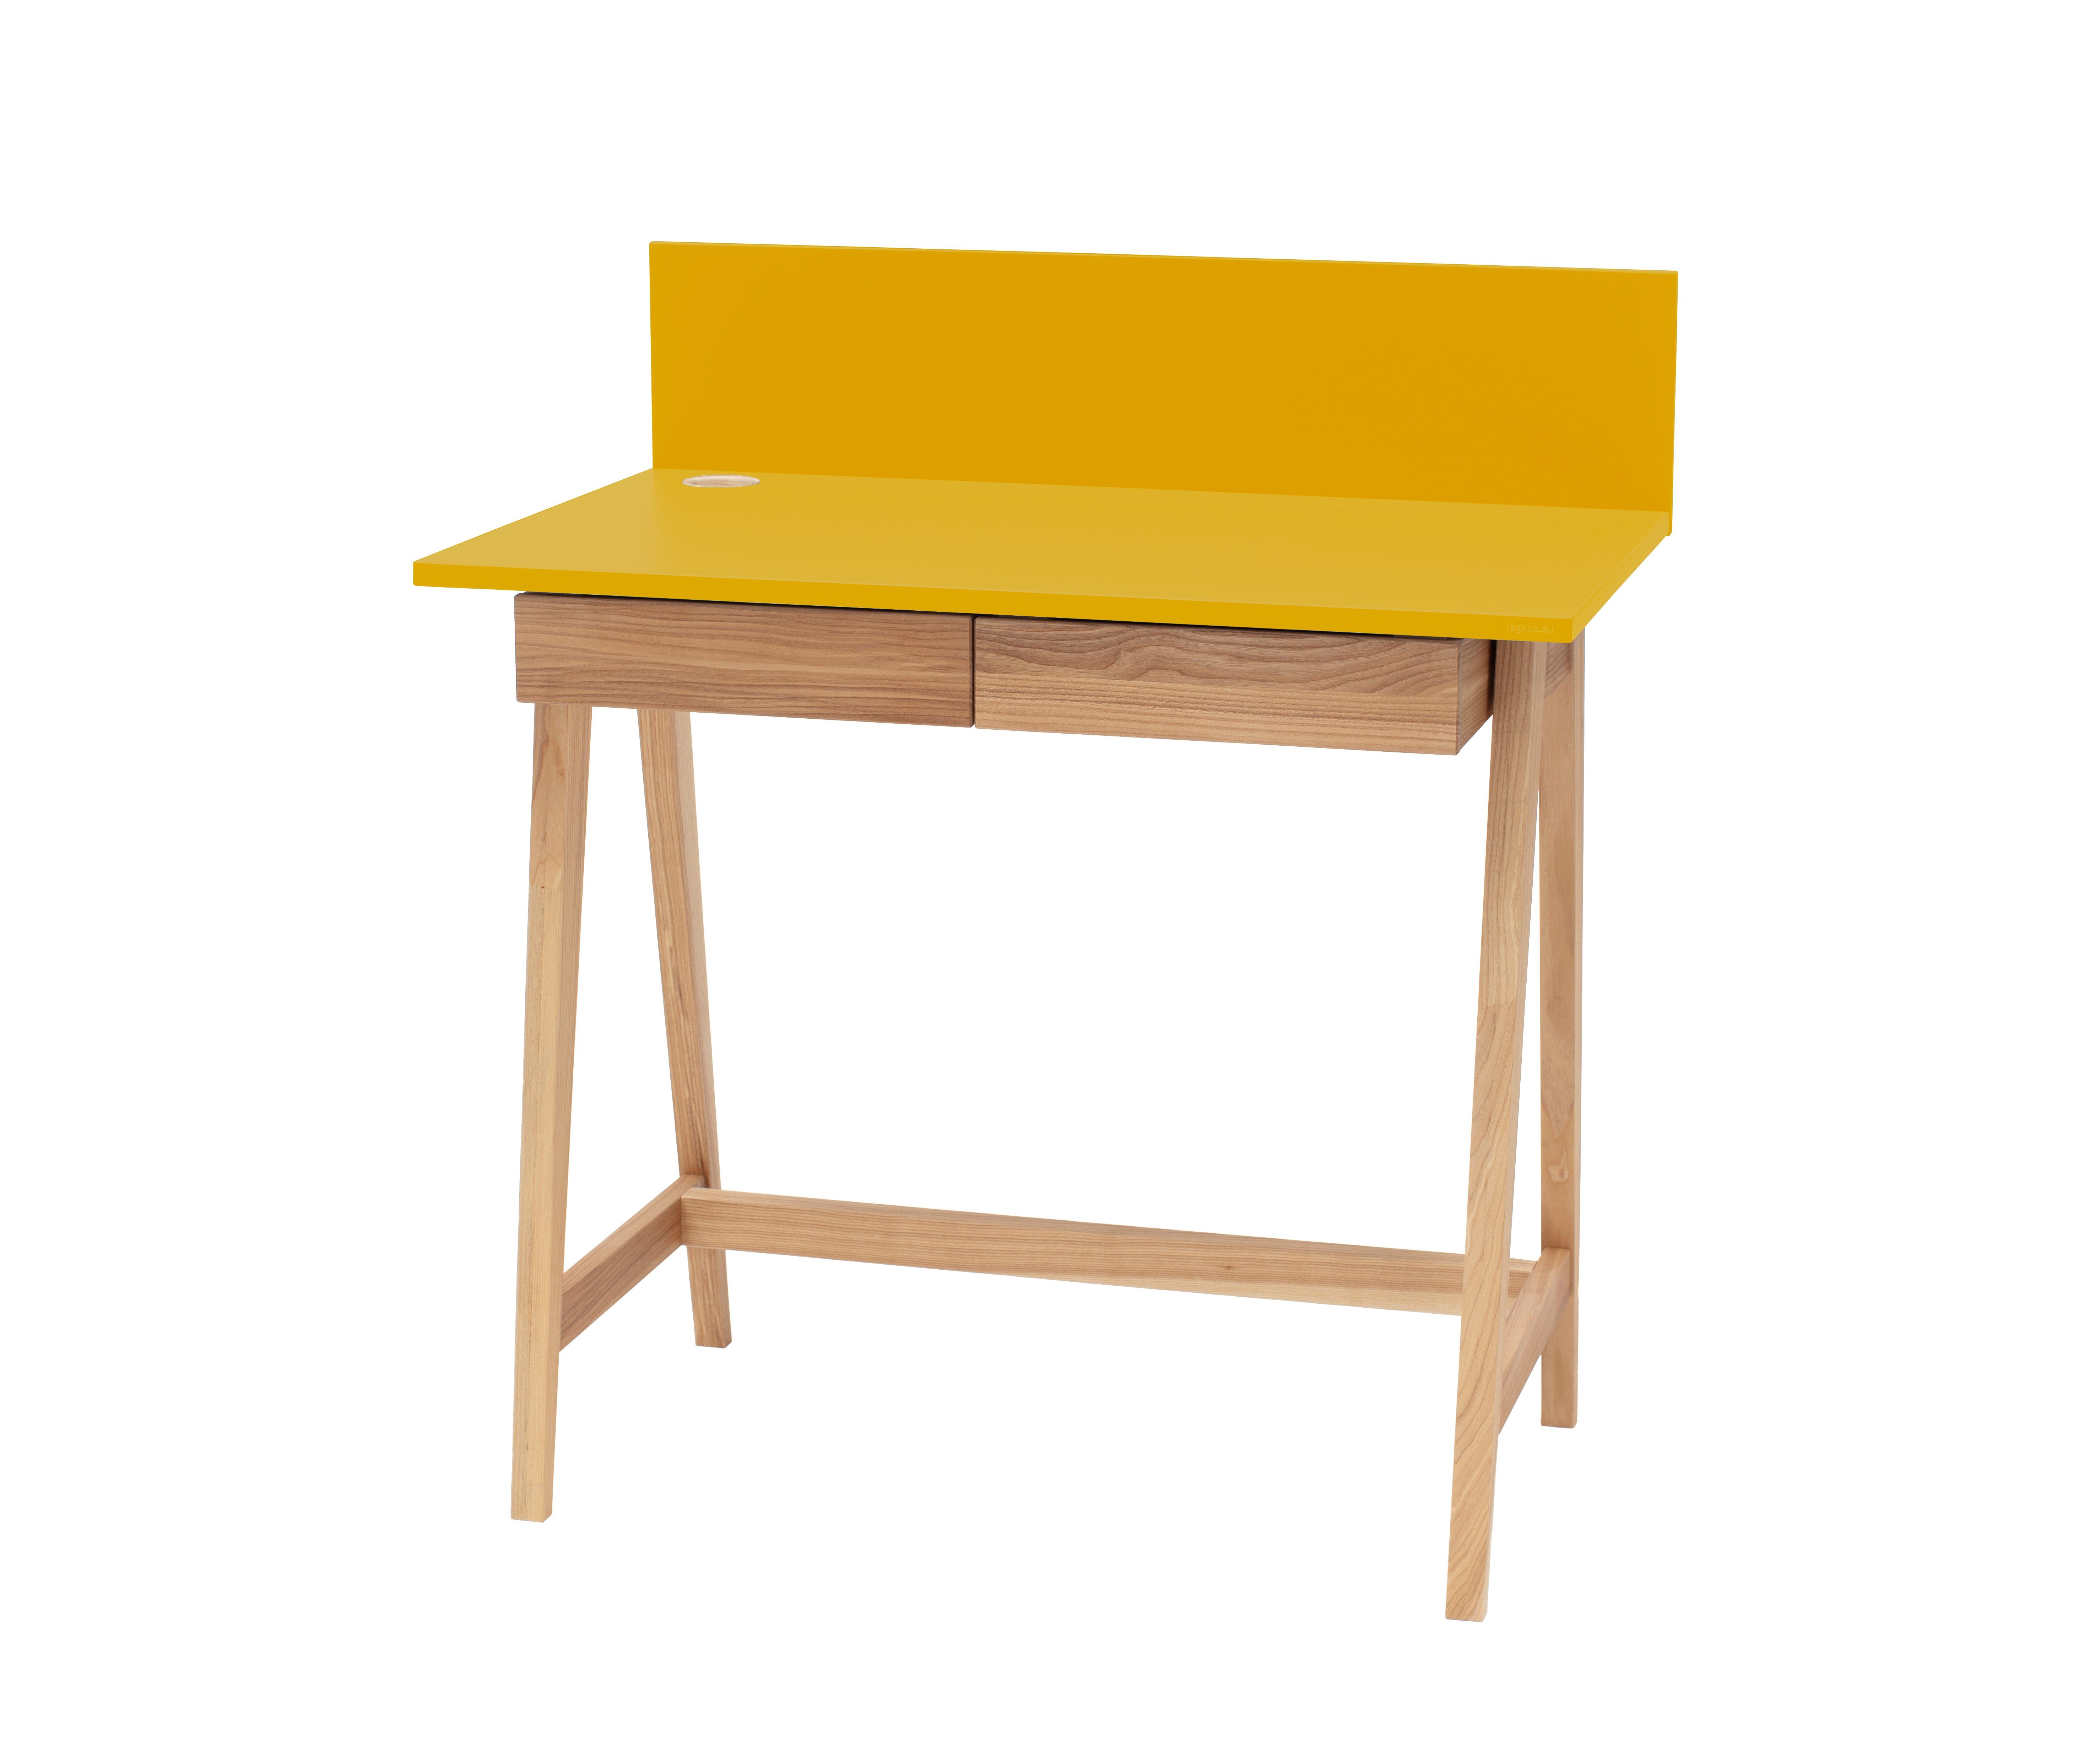 Eschenholz Andrea Schubladen - minimalistisches Schreibtisch - Andrea Gelb Kinderschreibtisch Kinderzimmer Bunter Design Schreibtisch mit (Kinderschreibtisch - - MDF-Platte Siblo mit Schubladen) -